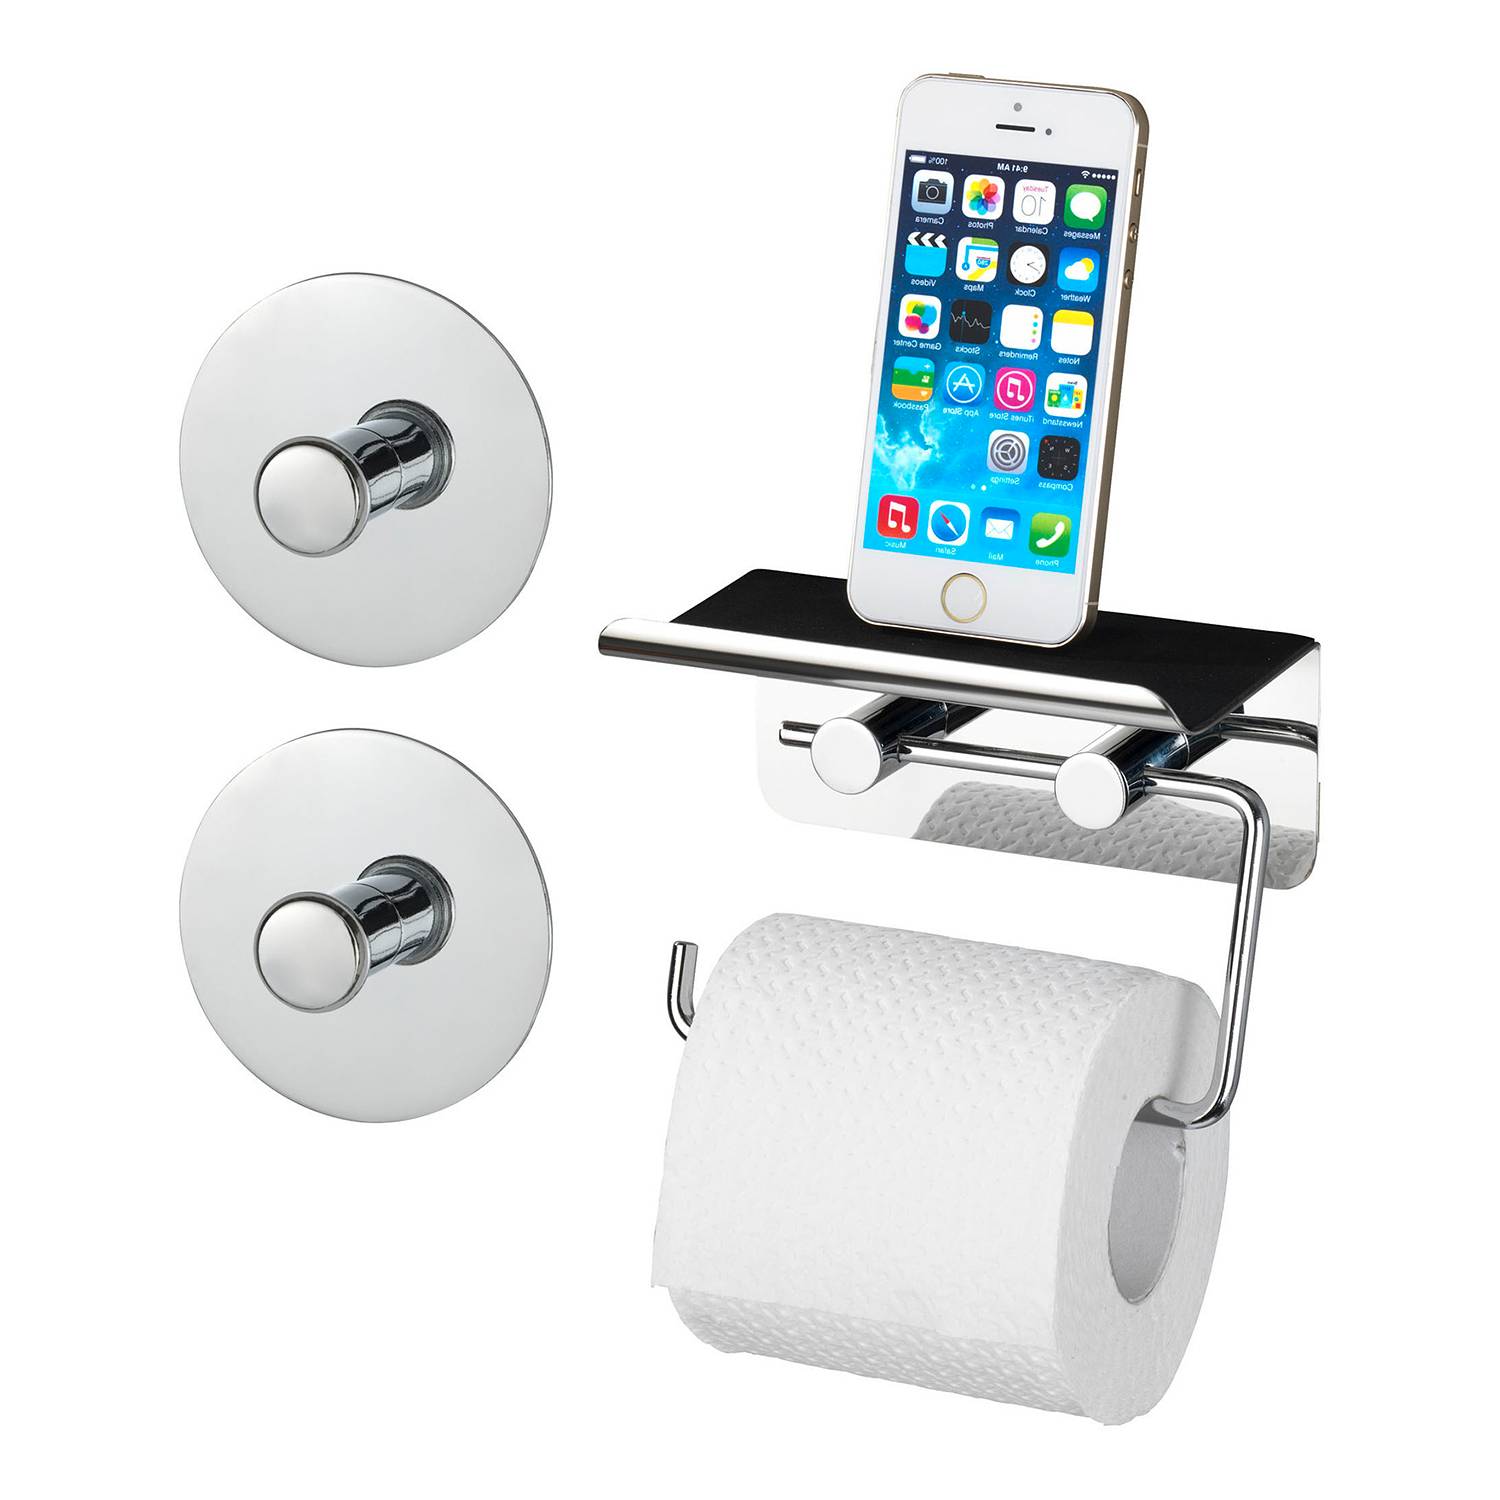 Ablage kaufen home24 Toilettenpapierhalter Smartphone |